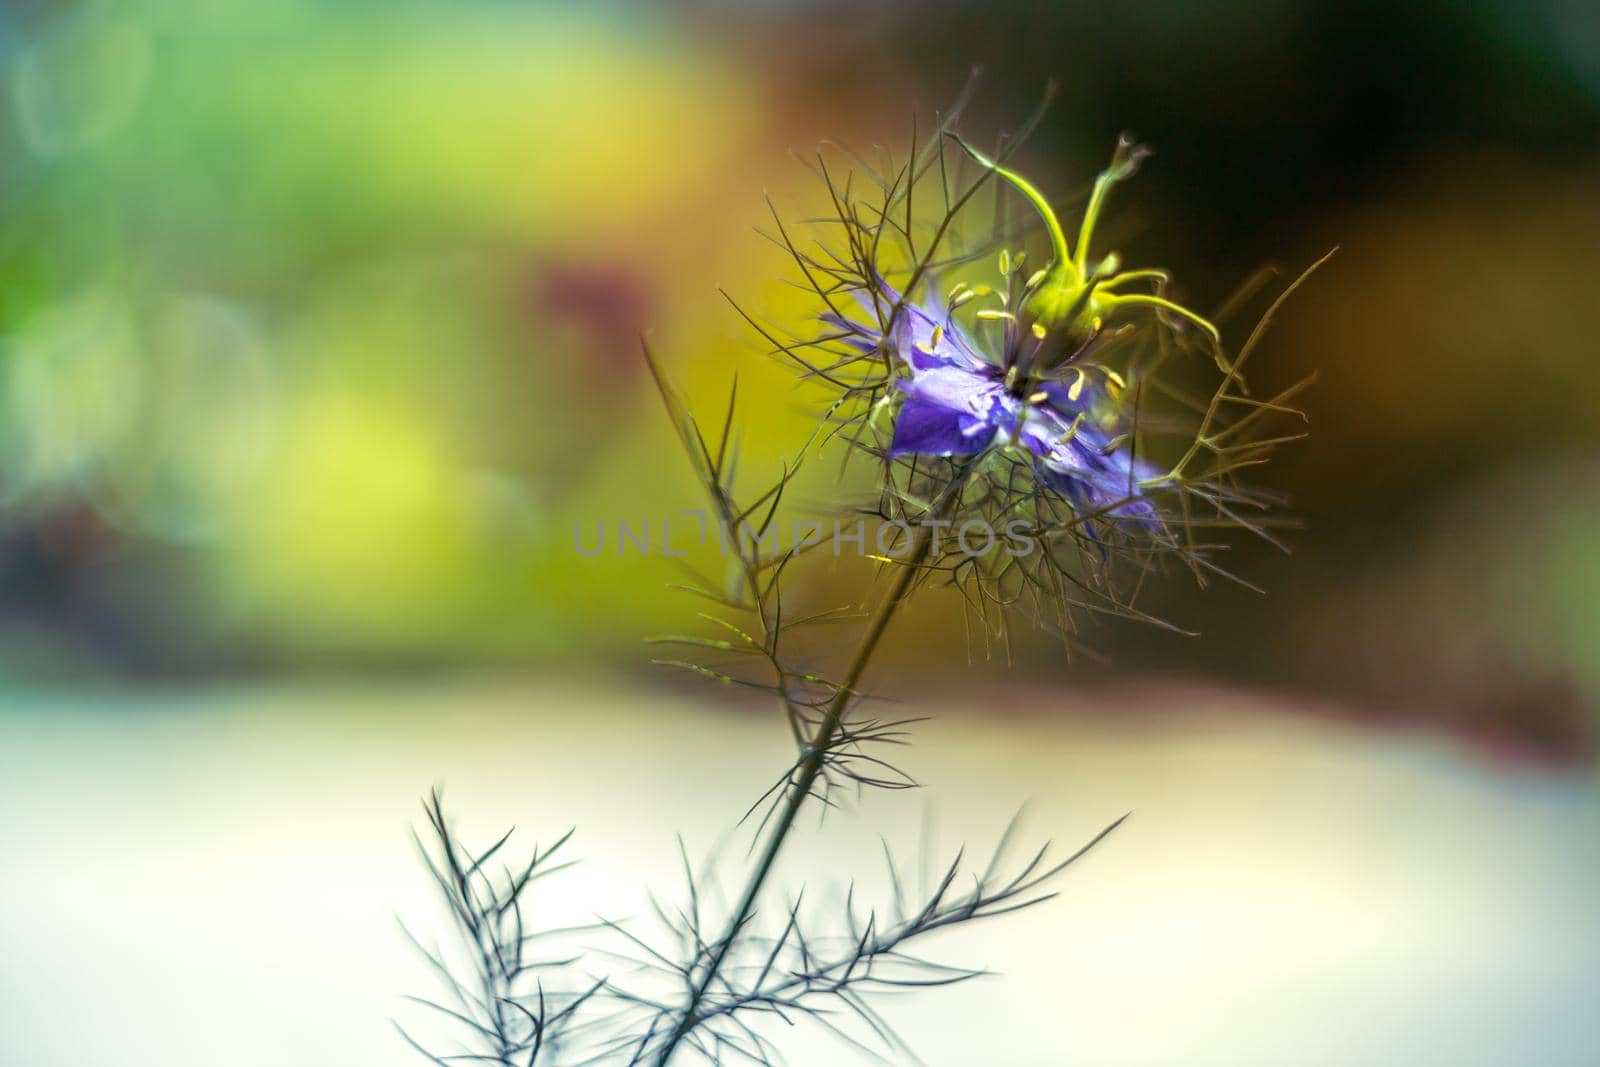 Love-in-a-mist flower -Nigella damascena, blue cottage garden plant over smooth blurry background.